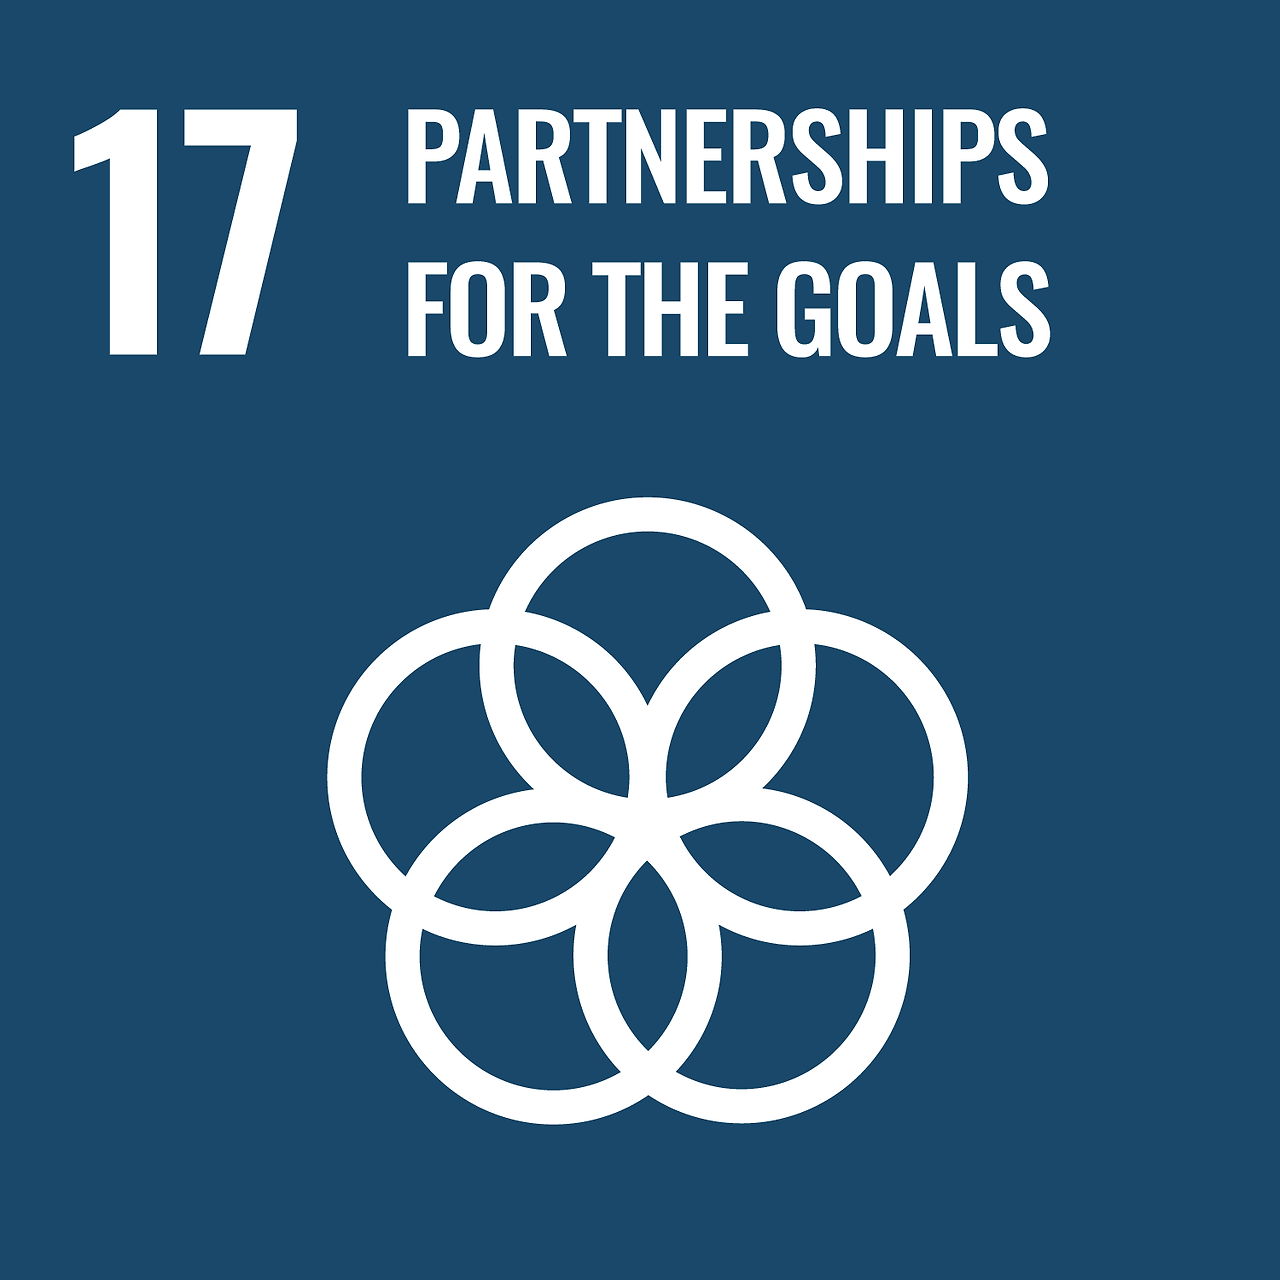 SDGs를 위한 파트너십 - 이행수단 강화와 지속가능발전을 위한 글로벌 파트너십의 활성화